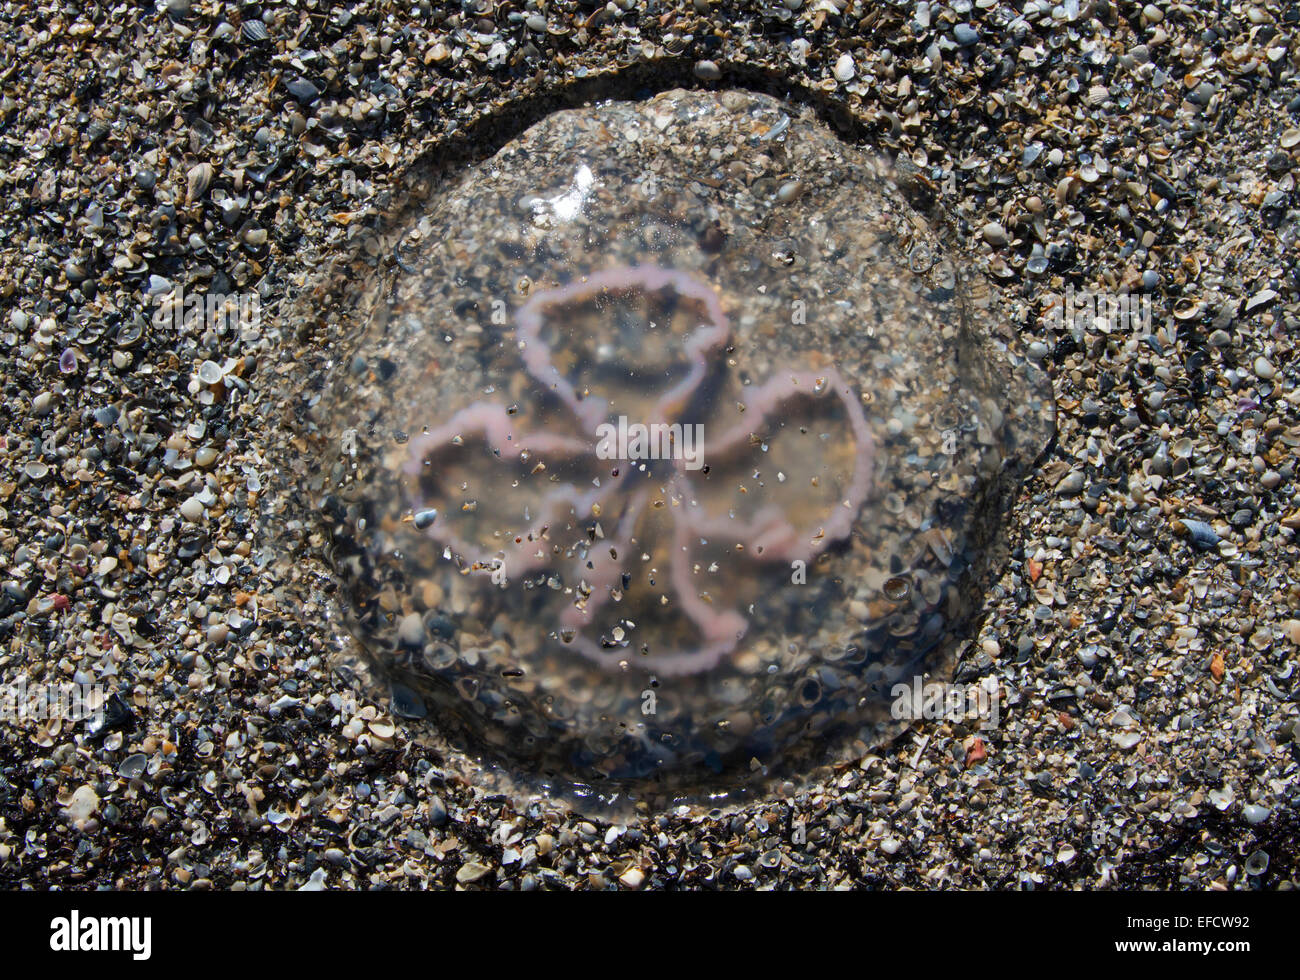 A dead jellyfish on the ocean beach. Stock Photo